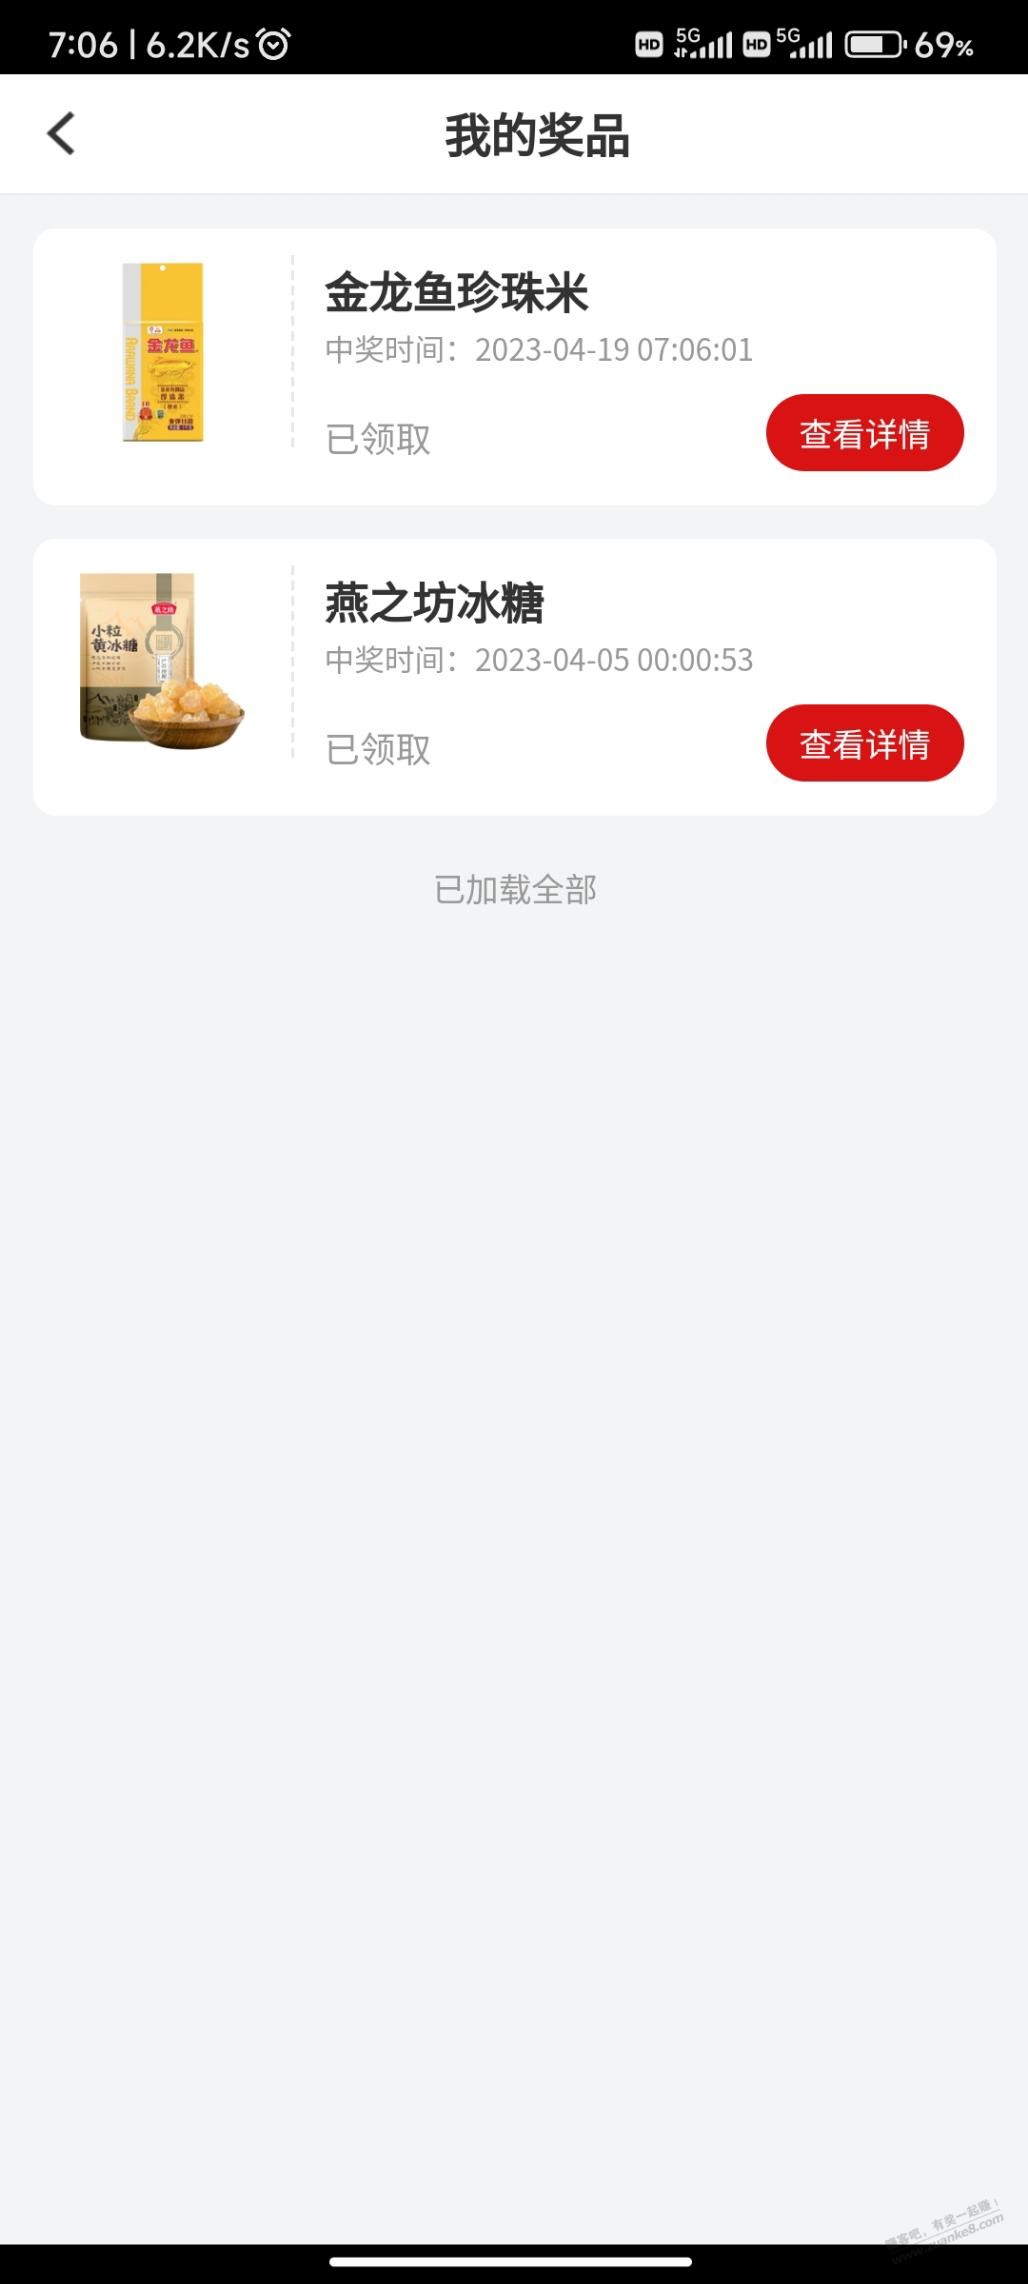 南京银行抽奖水-中了米-惠小助(52huixz.com)